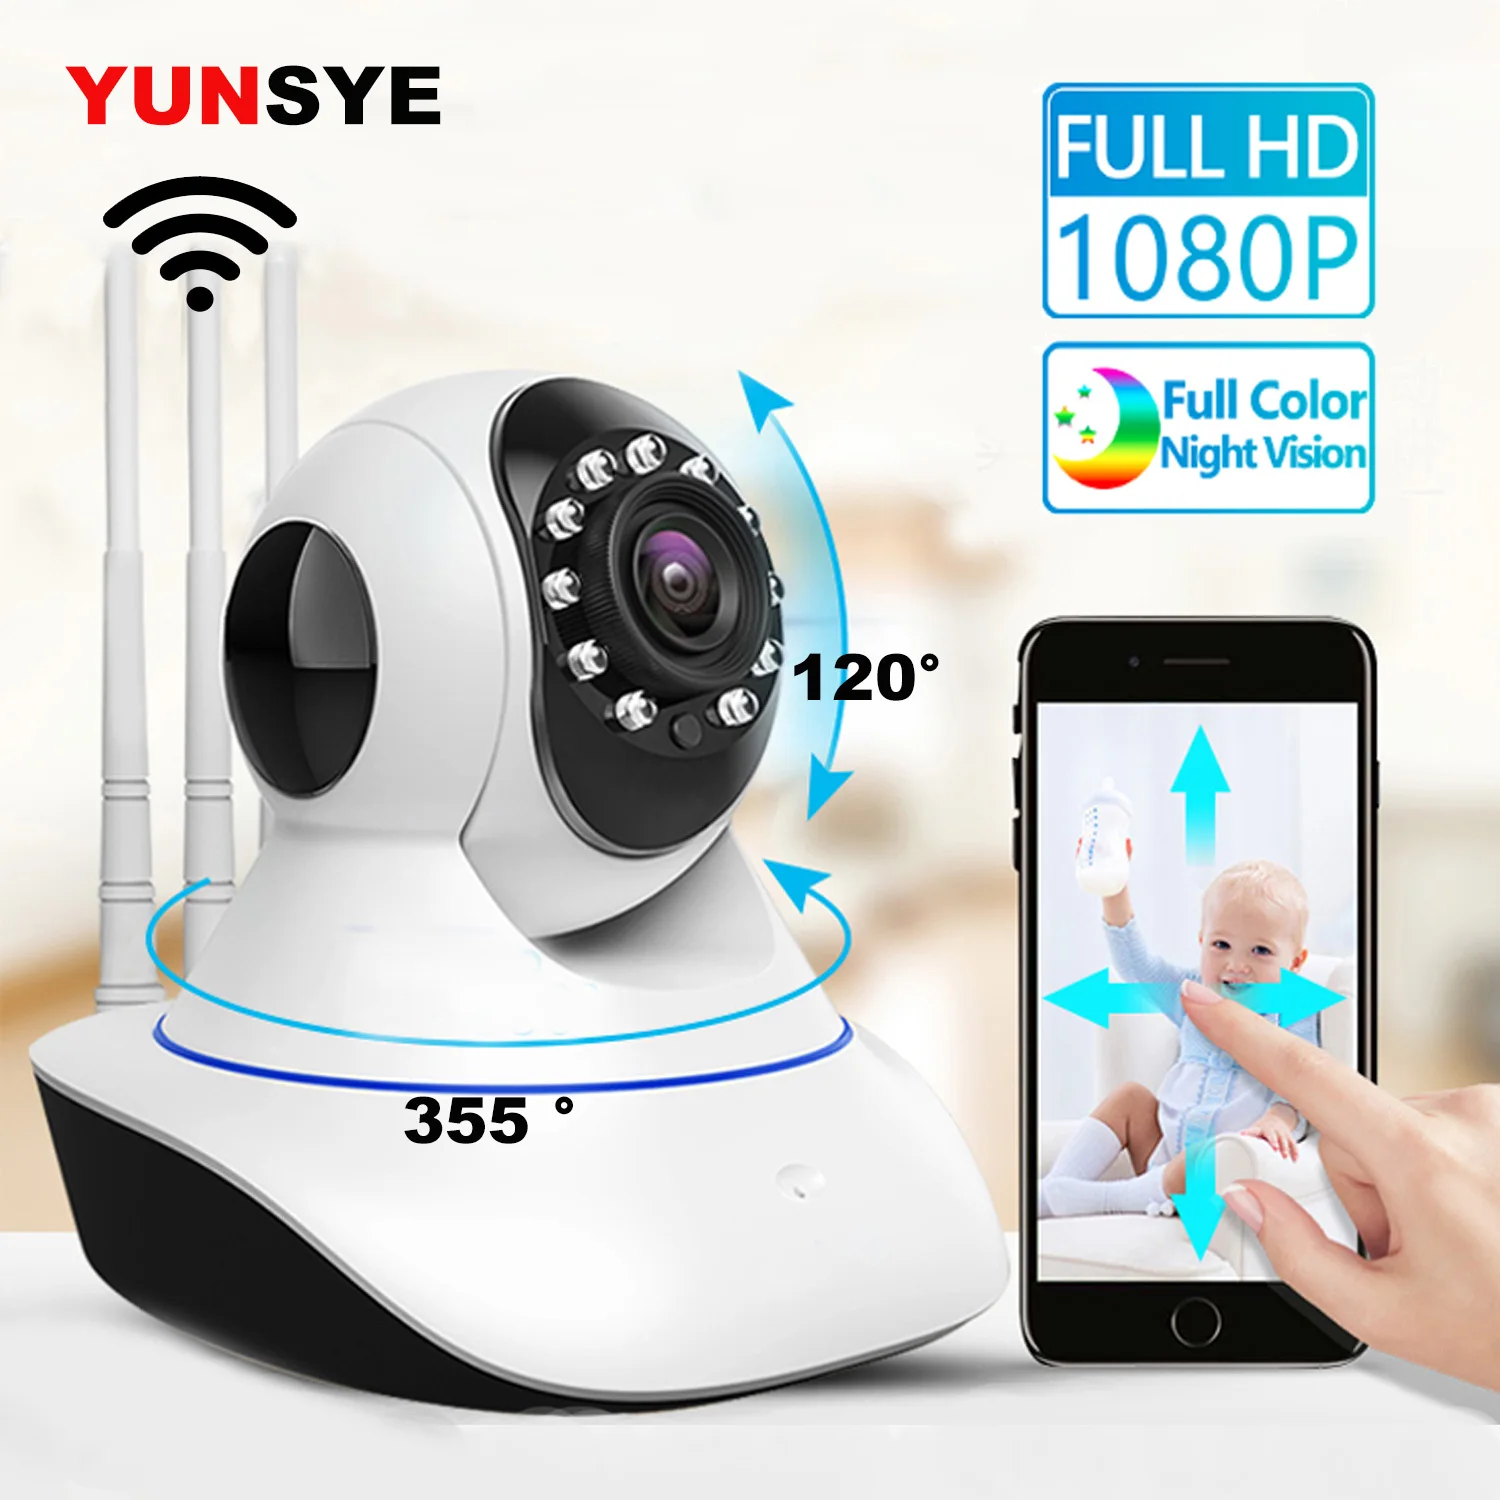 Беспроводная Wi-Fi IP-камера YUNSYE, HD 1080P, CCTV, монитор для домашней безопасности, интеллектуальная сеть, двухстороннее аудио, ночное видение, Радио... от AliExpress WW